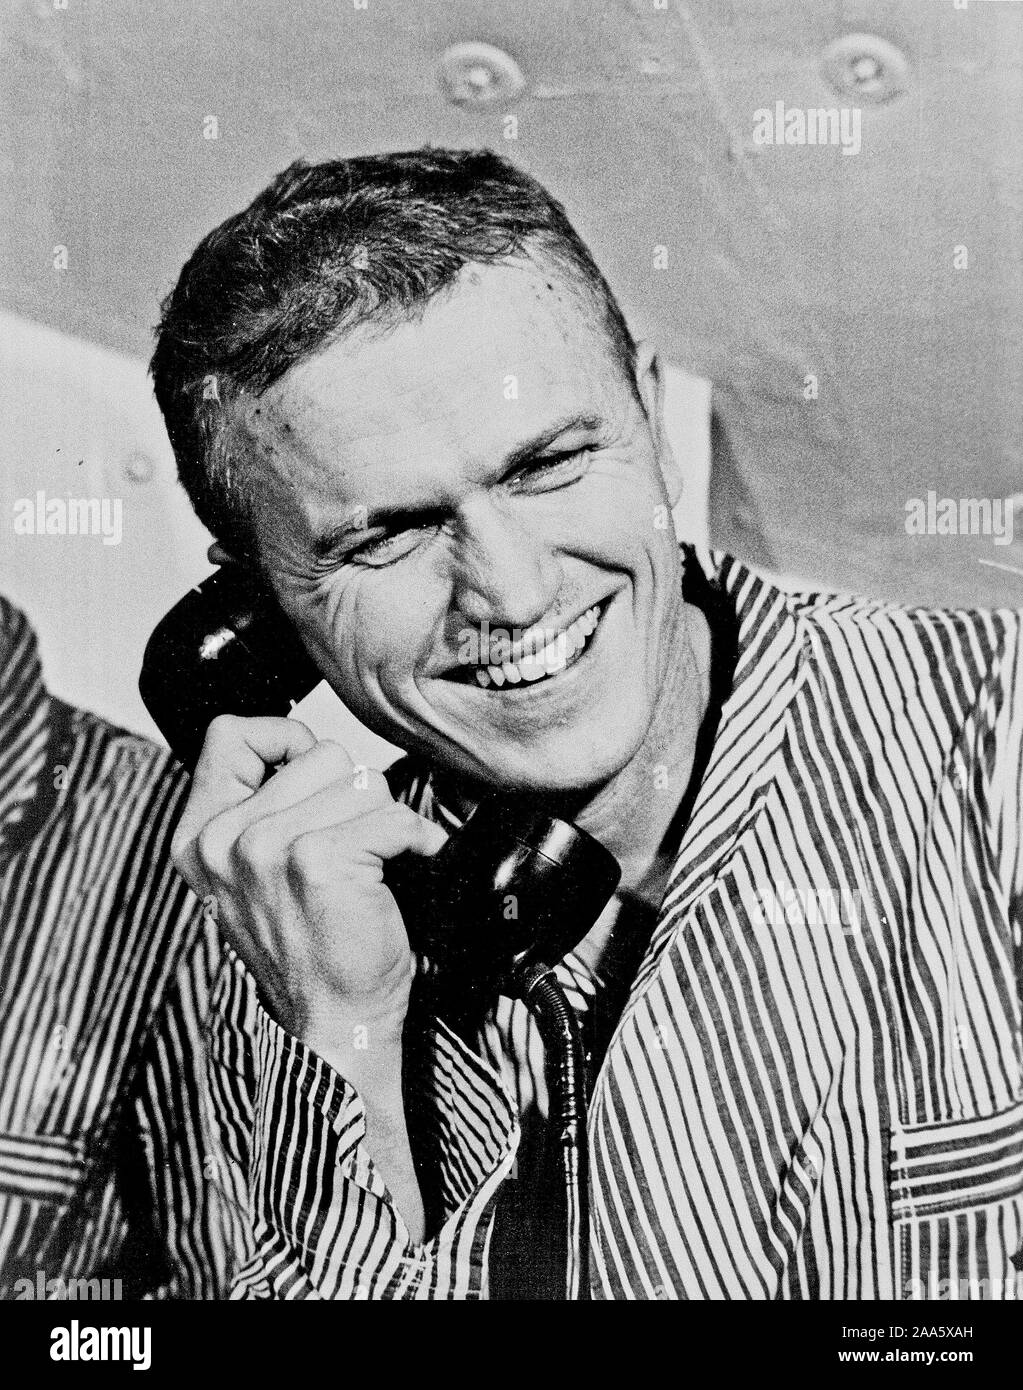 1968 - Apollo 8 astronauta Frank Borman, comandante della prima presidiato di Saturno V volo spaziale in orbita lunare, accettato una chiamata telefonica da parte degli Stati Uniti Il presidente Lyndon B. Johnson prima del lancio. Foto Stock